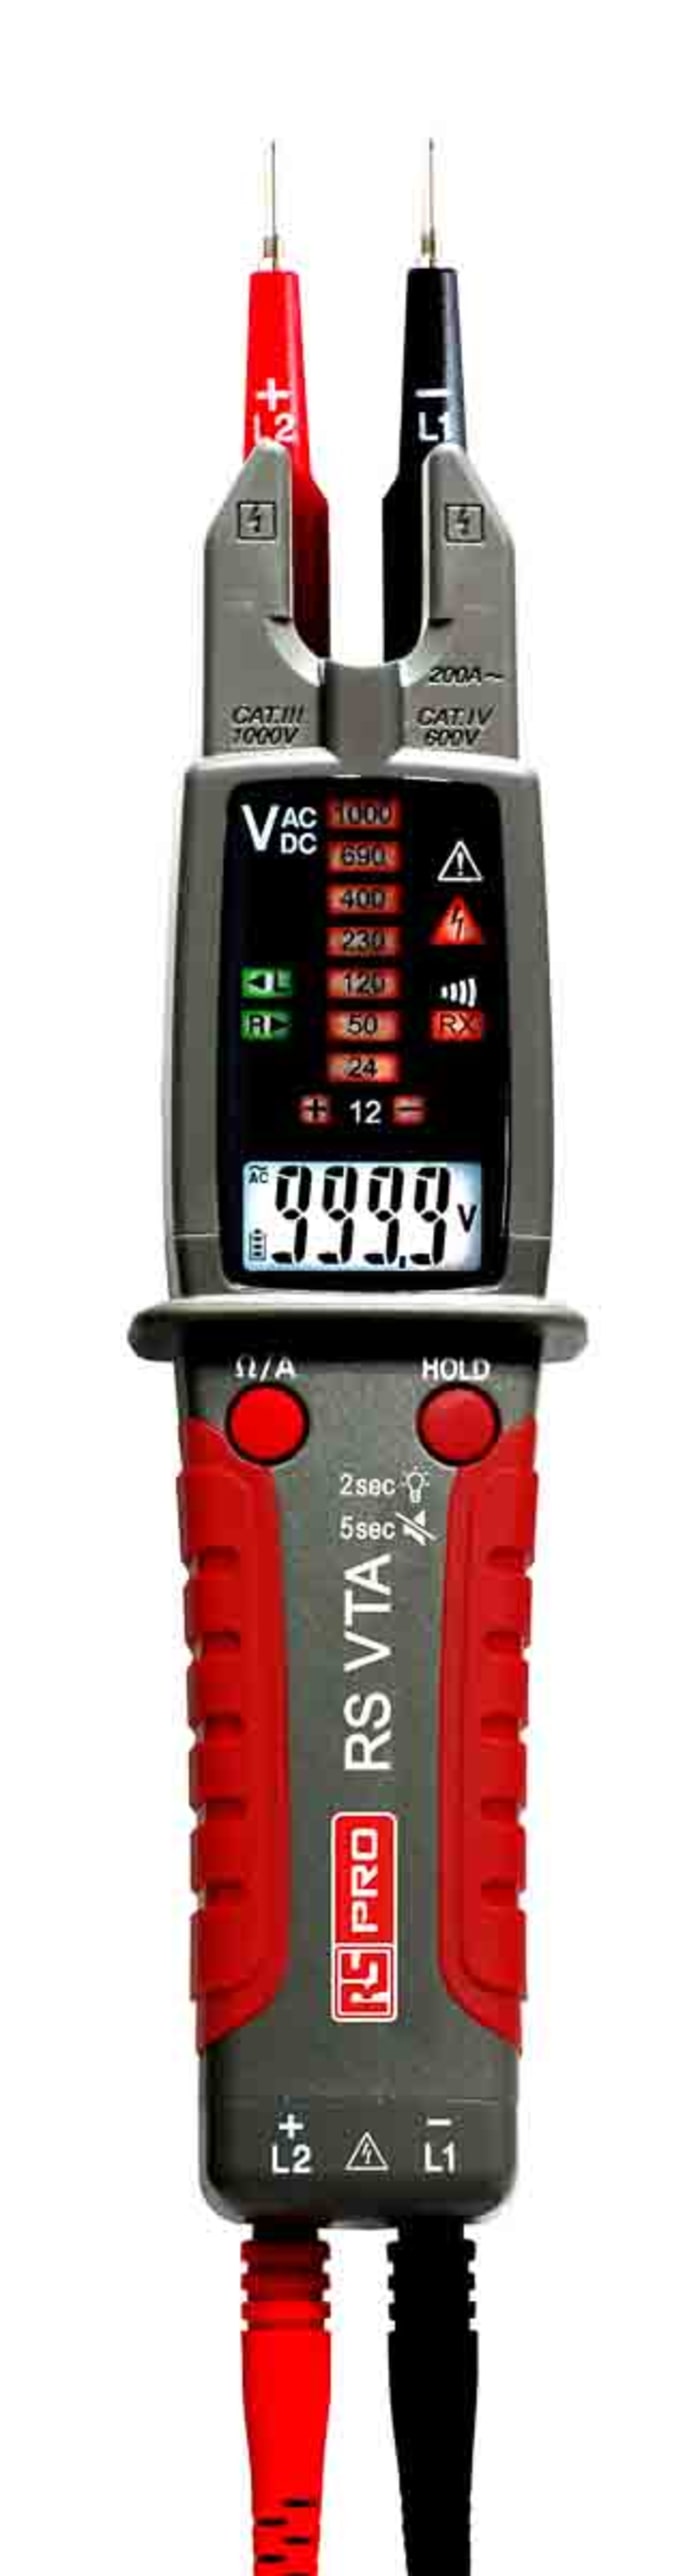 RS PRO | RS PRO APPA VTA, Digital Voltage tester, 999.9V ac/dc ...